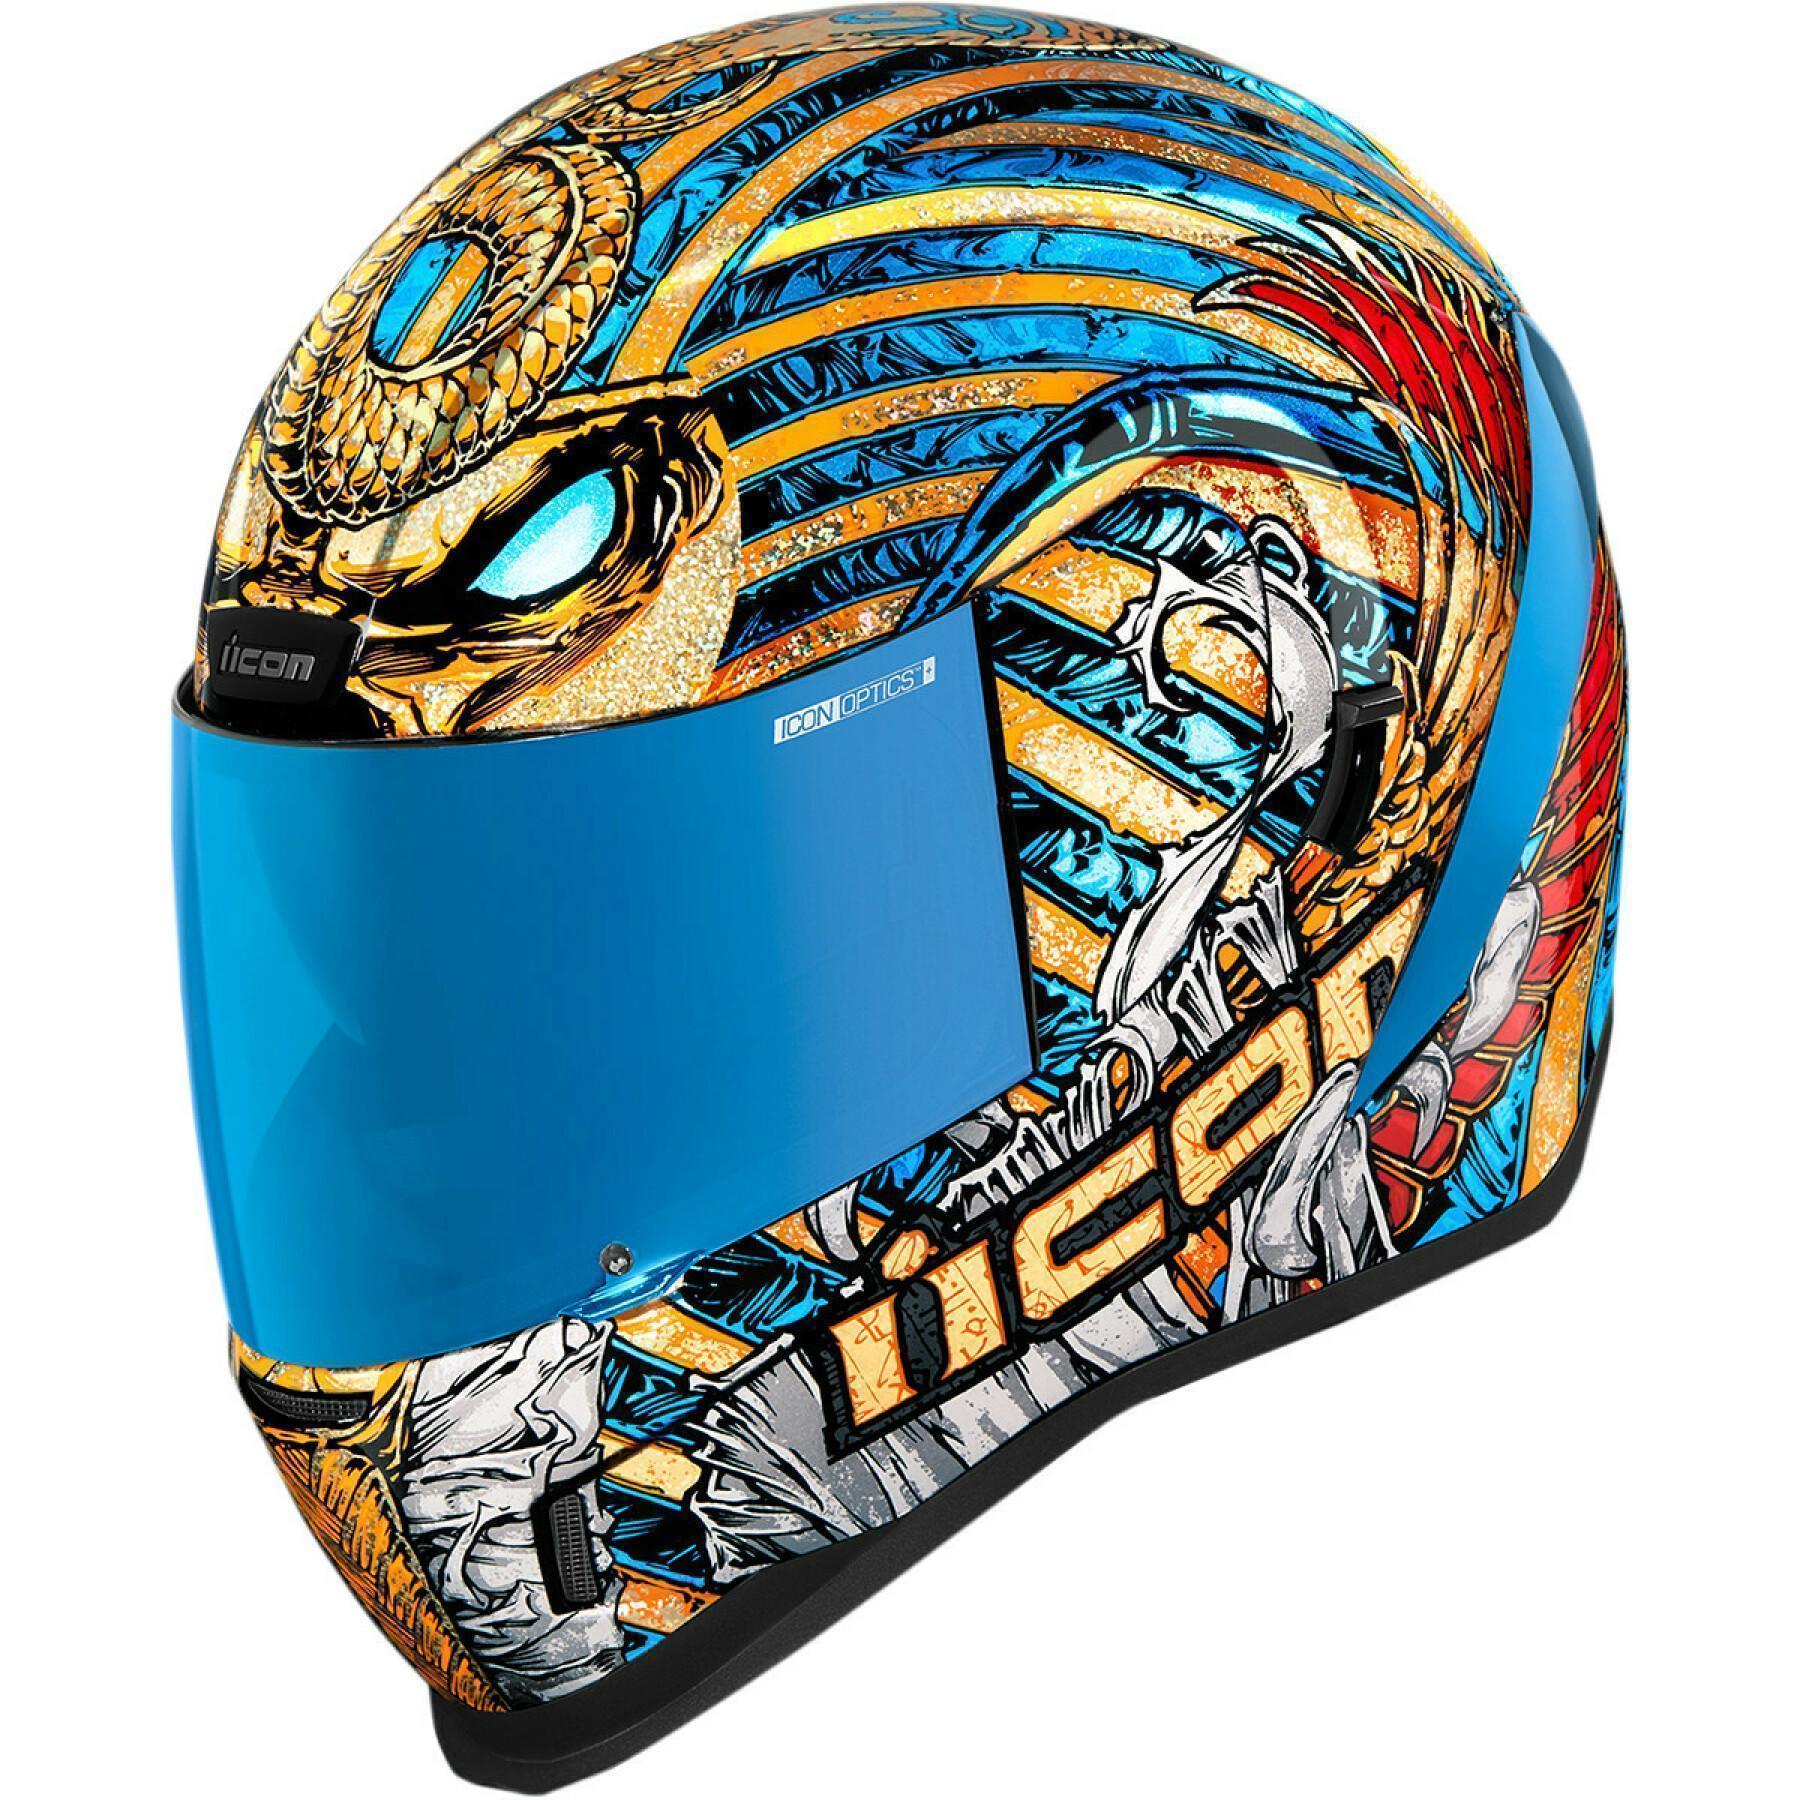 Capacete de motocicleta facial completo Icon afrm pharaoh gd